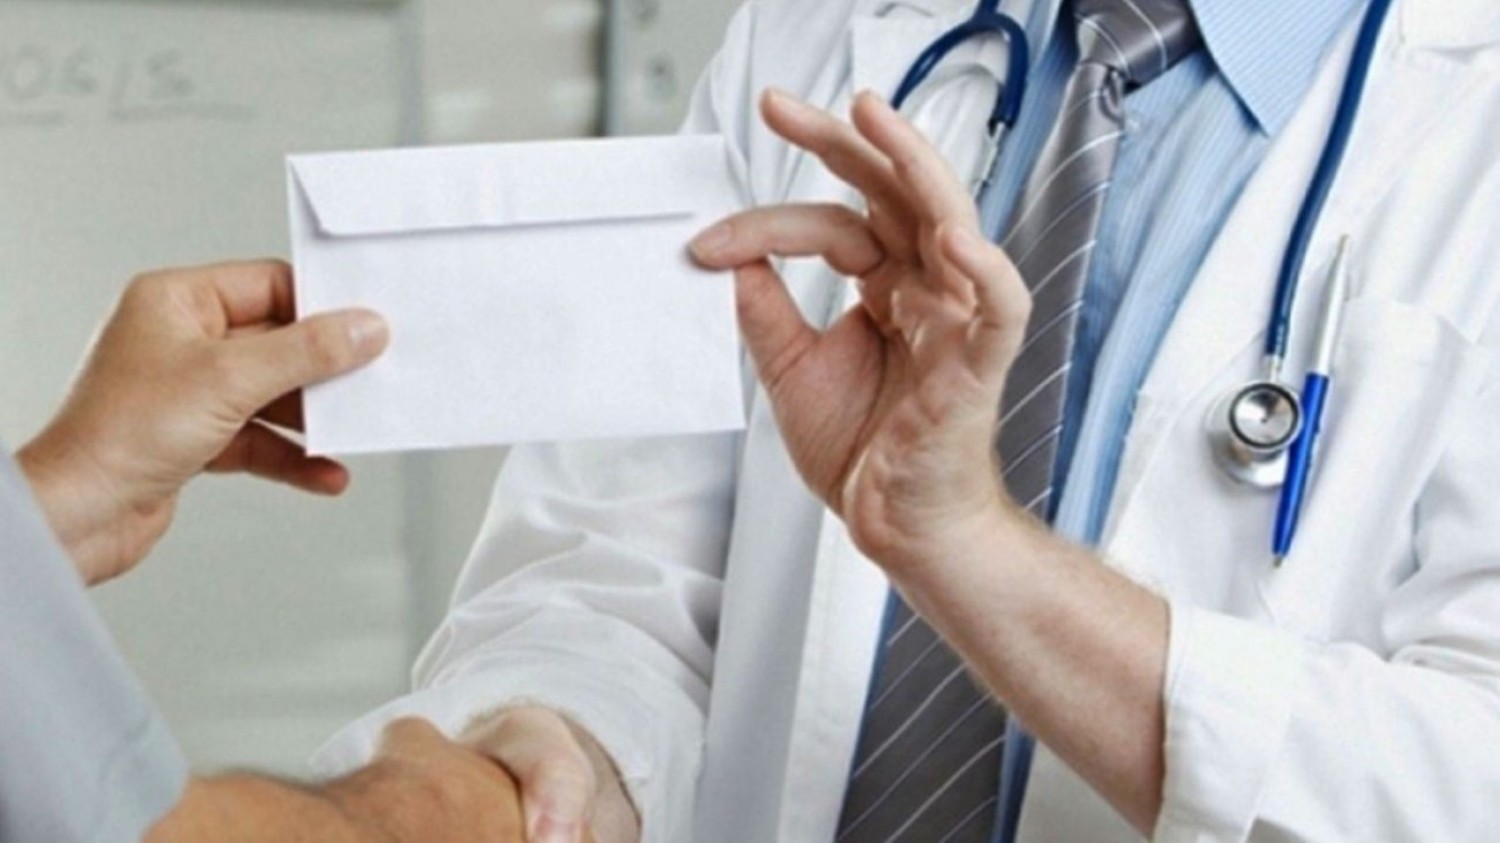 Χειροπέδες σε γιατρό δημοσίου νοσοκομείου της Αττικής για «φακελάκι» 500 ευρώ